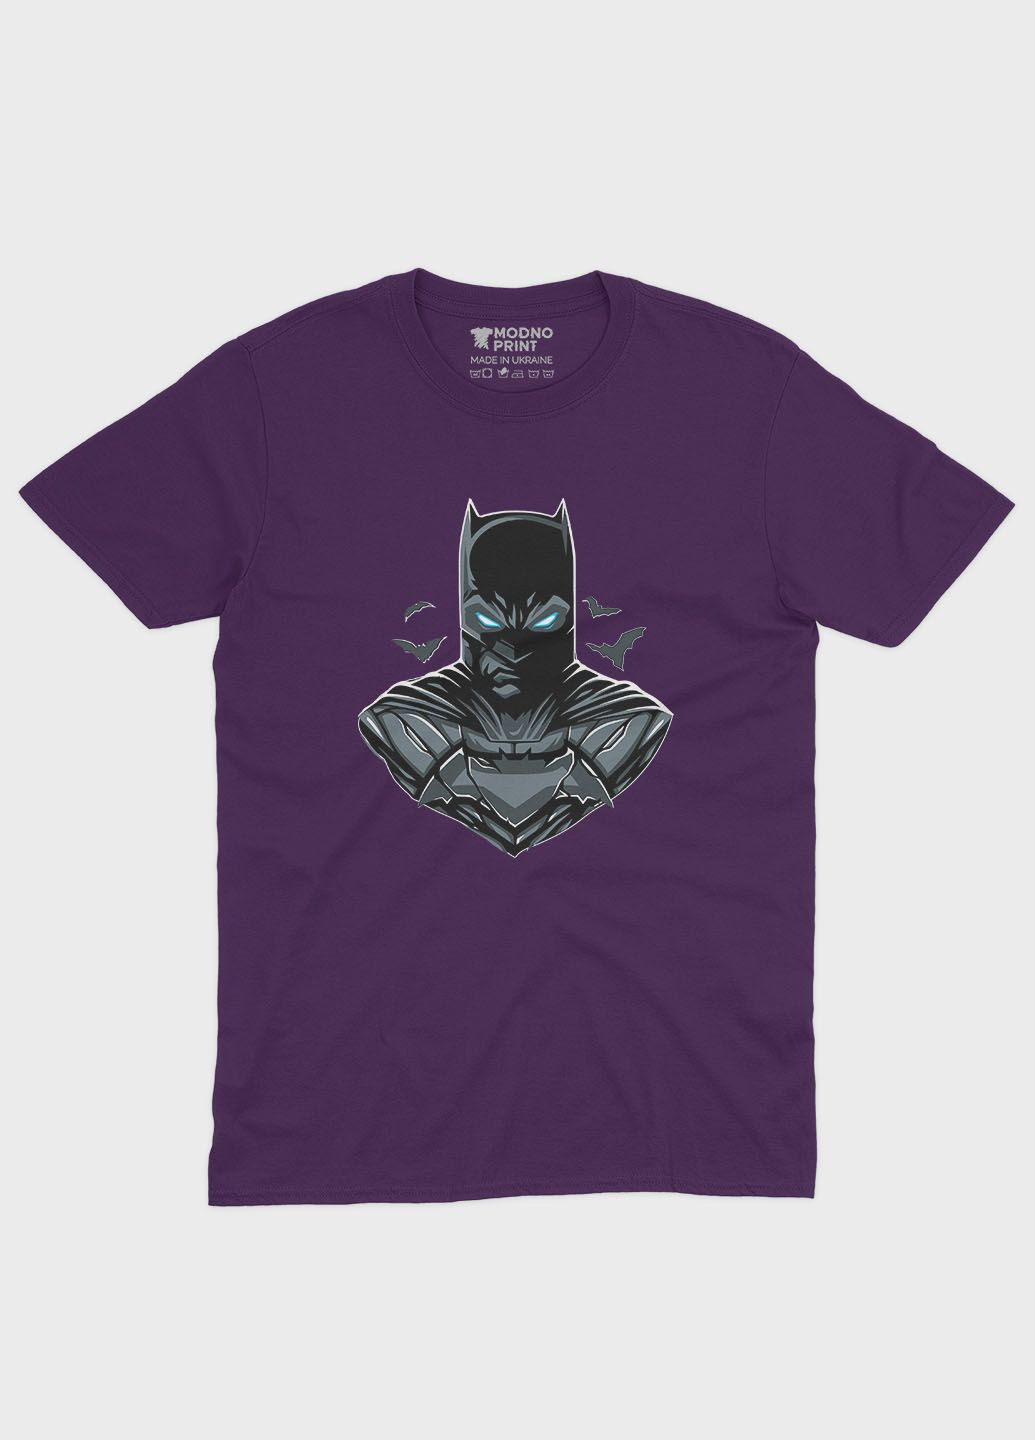 Фиолетовая демисезонная футболка для мальчика с принтом супергероя - бэтмен (ts001-1-dby-006-003-045-b) Modno